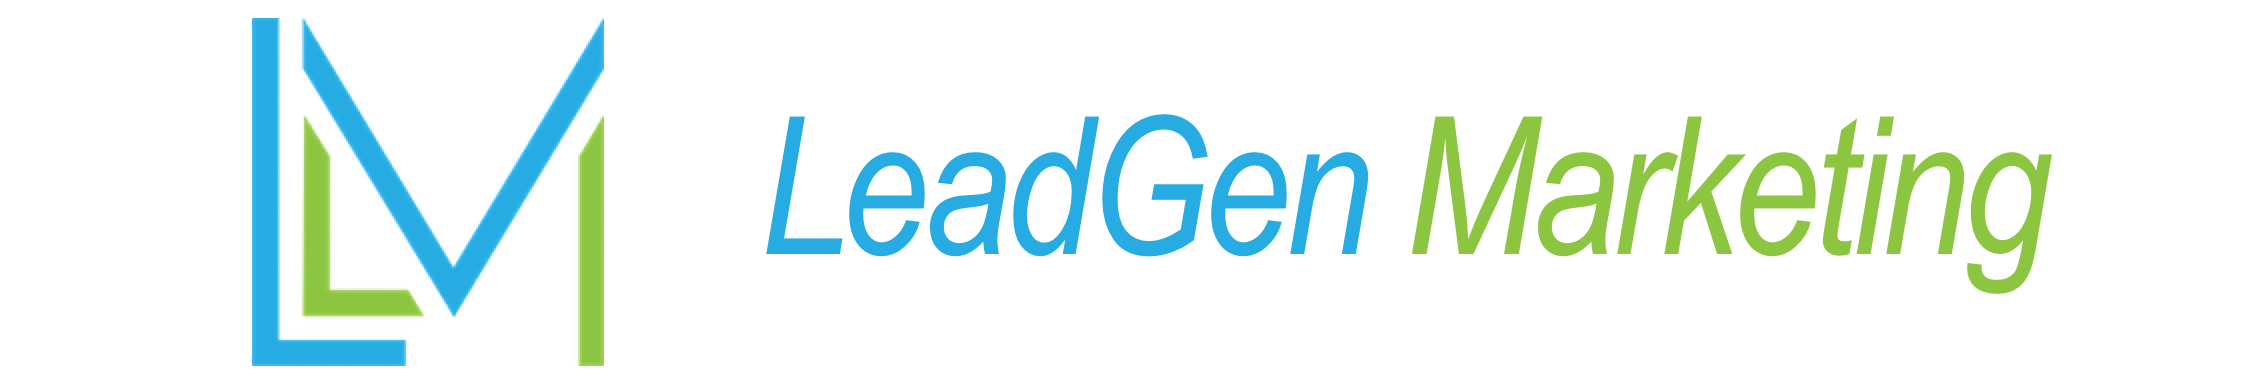 LeadGen Marketing